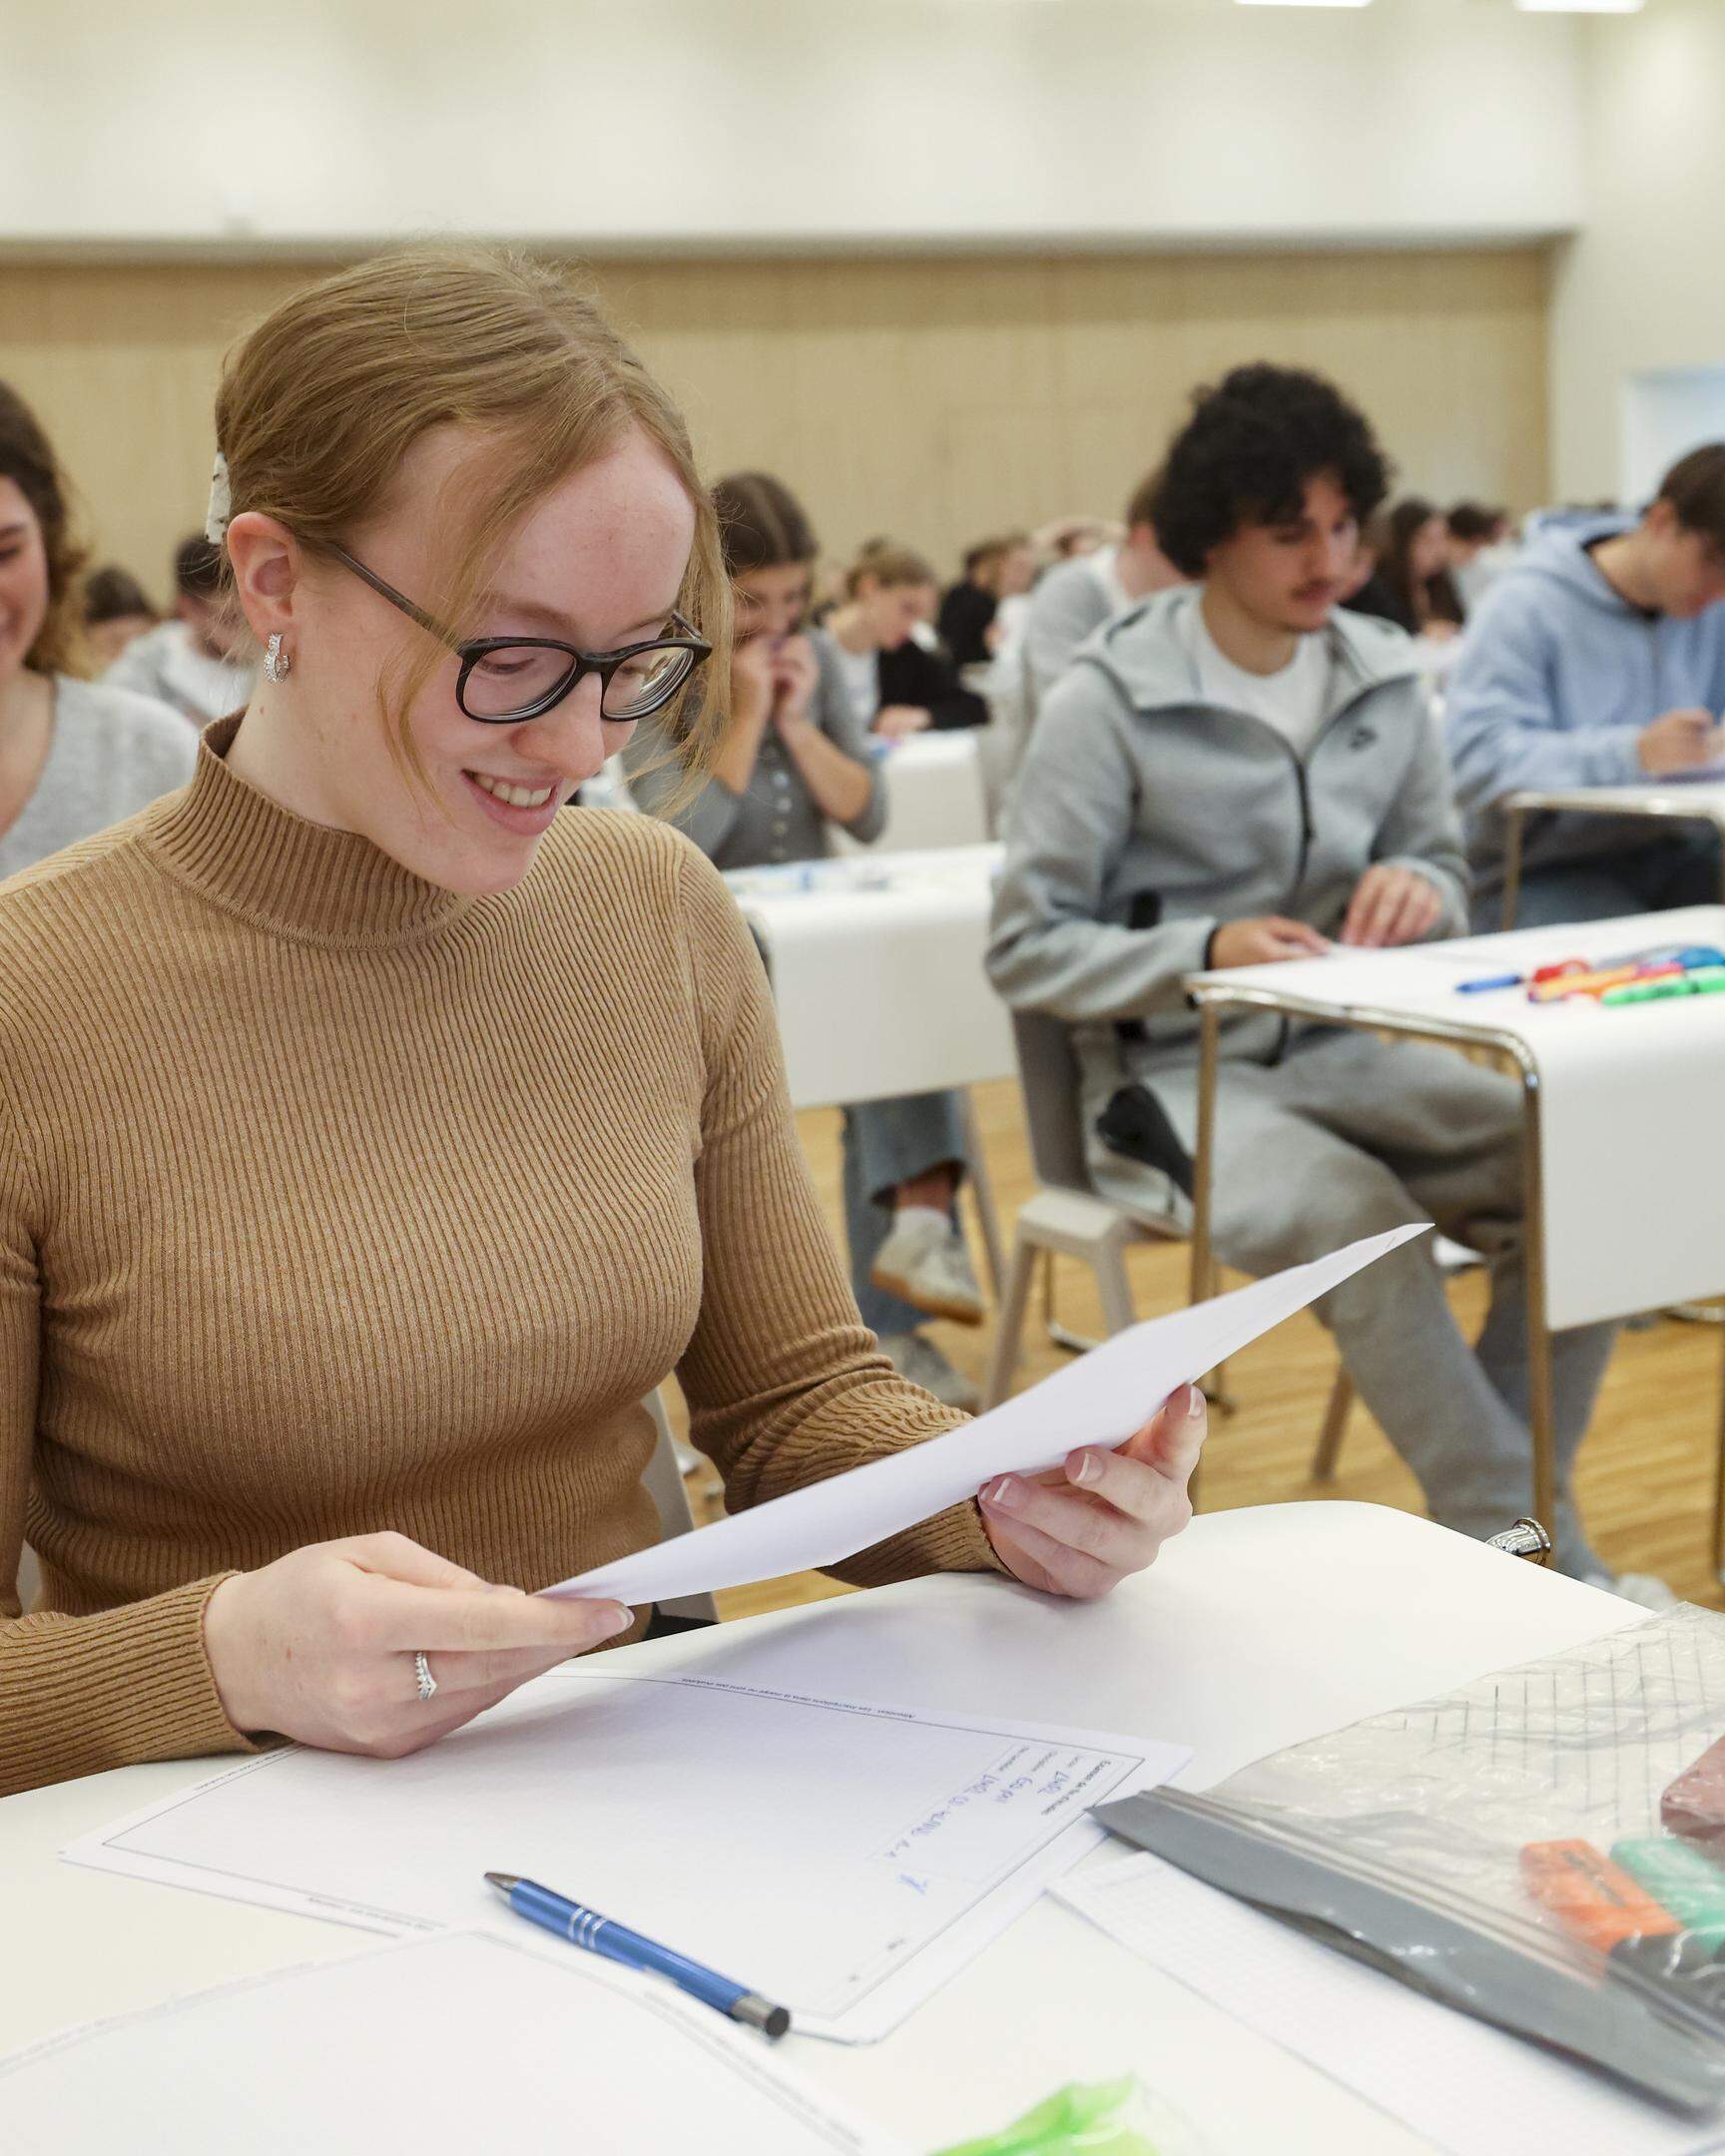 Der Startschuss für die Abschlussprüfungen an den klassischen und allgemeinen Sekundarschulen in Luxemburg ist gefallen. Wer gut vorbereitet ist, hat gut lachen.